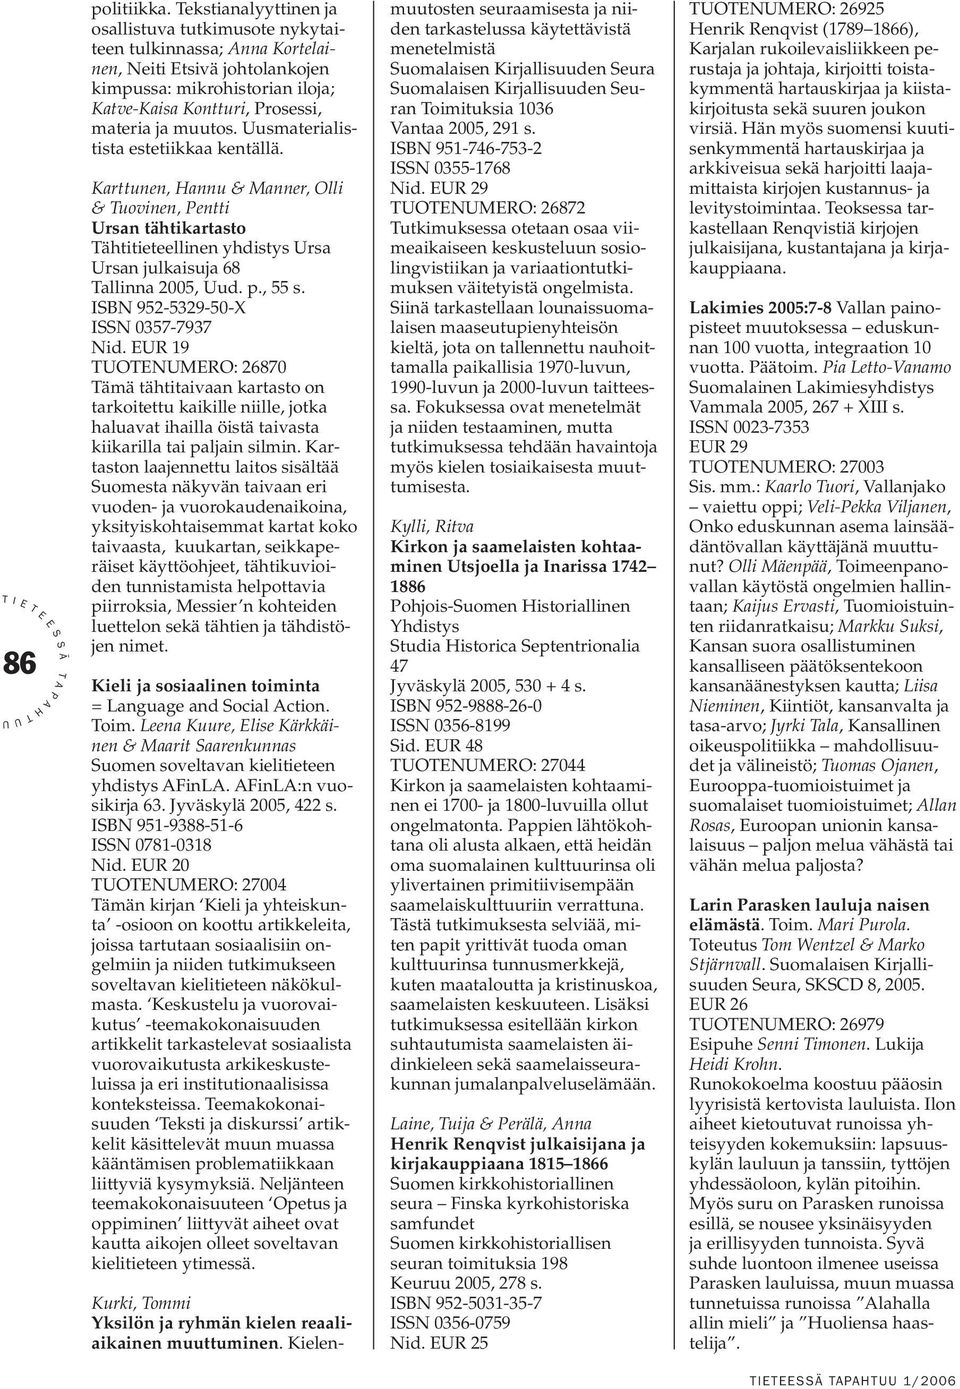 usmaterialistista estetiikkaa kentällä. Karttunen, annu & Manner, Olli & uovinen, entti rsan tähtikartasto ähtitieteellinen yhdistys rsa rsan julkaisuja 68 allinna 2005, ud. p., 55 s.